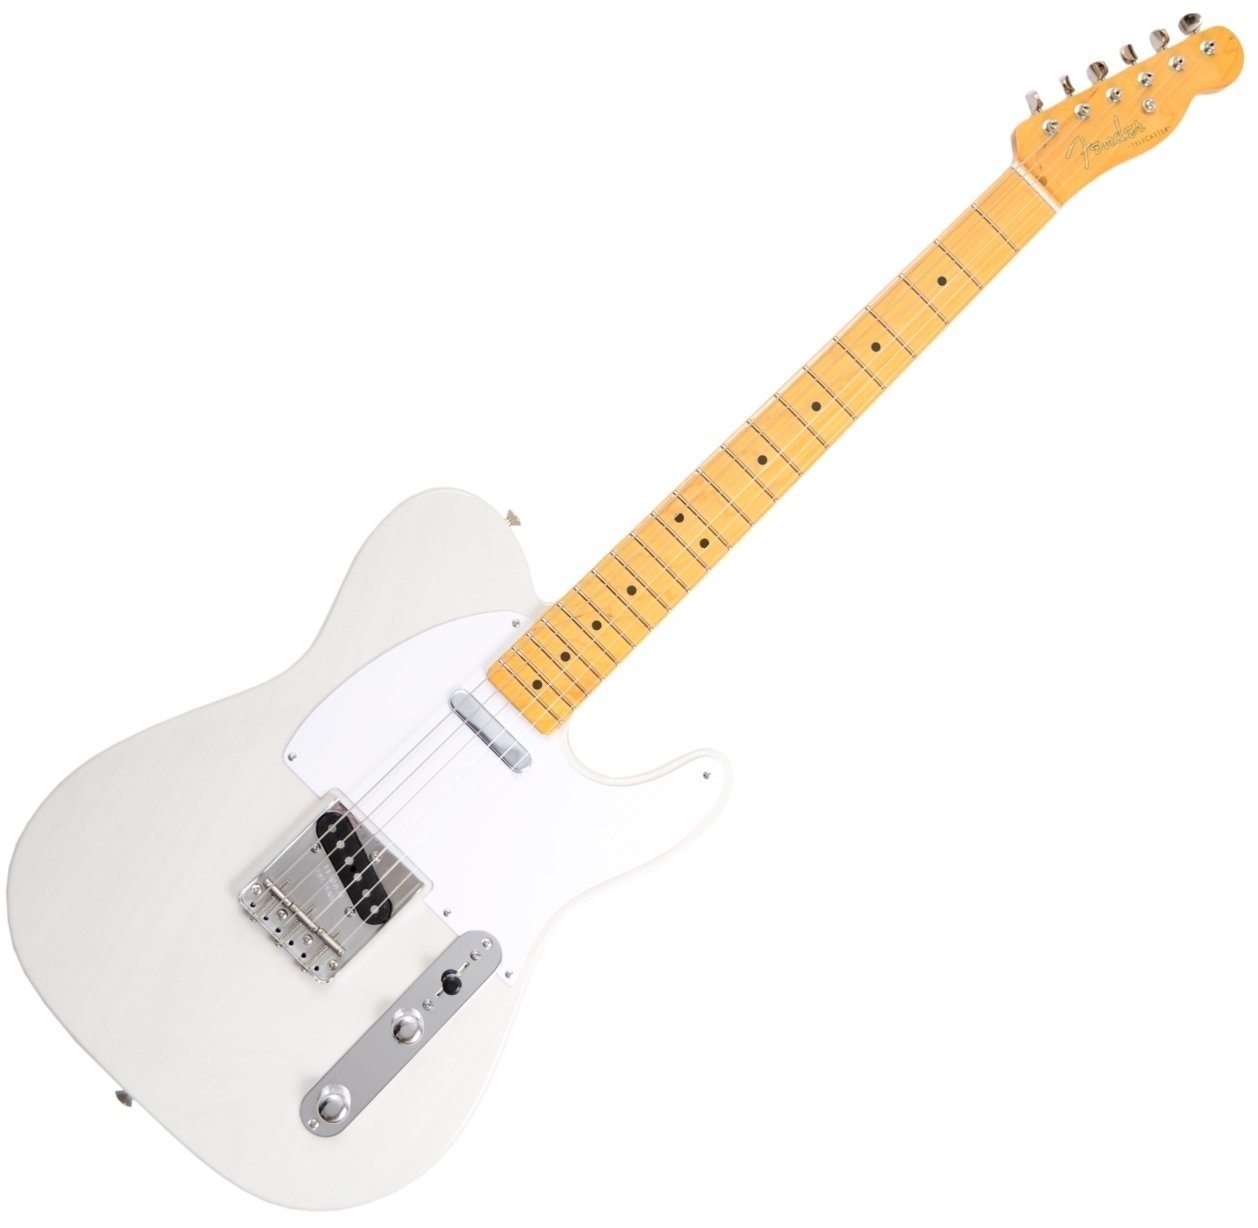 Ηλεκτρική Κιθάρα Fender Classic Series '50s Telecaster Lacquer, Maple Fingerboard, White Blonde